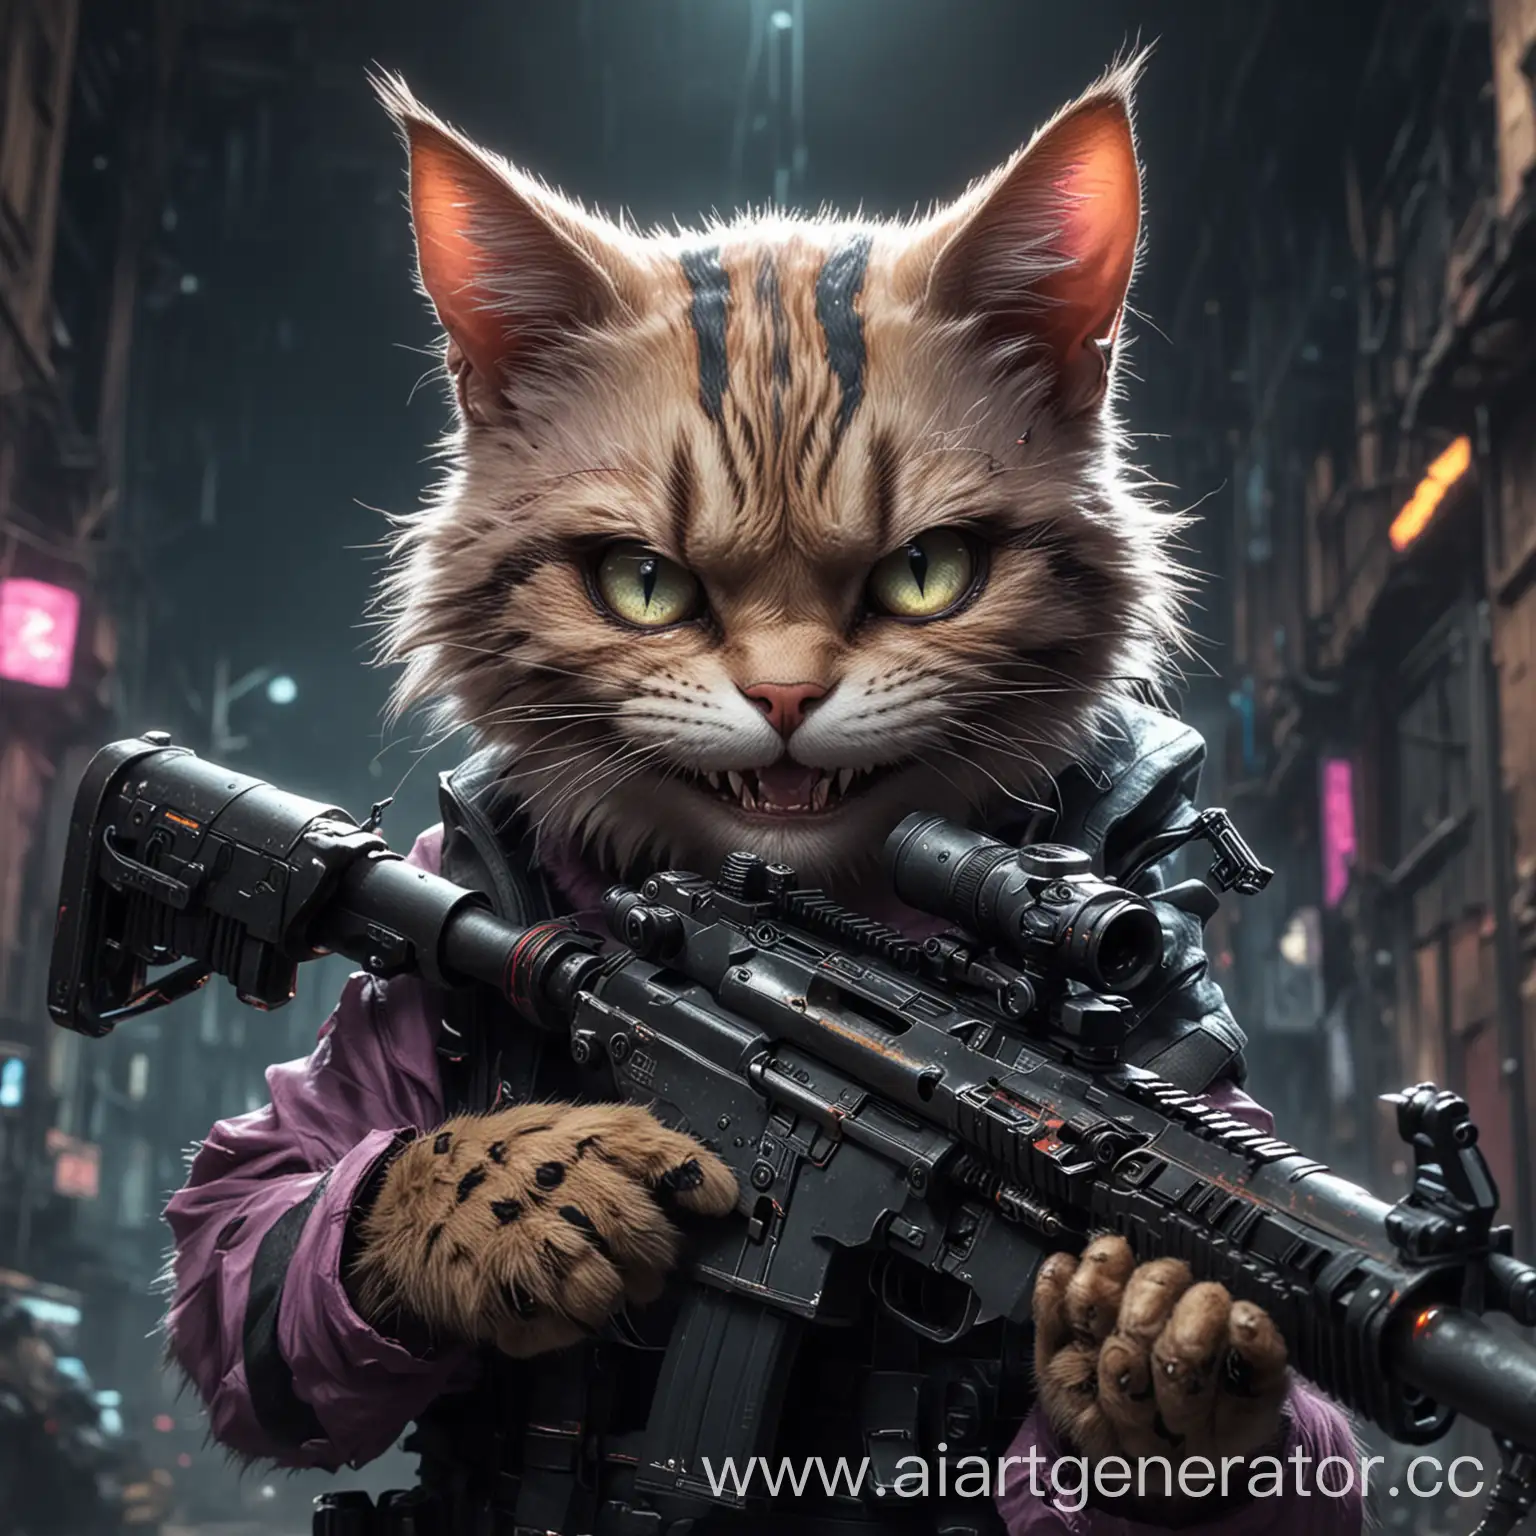 кот со снайперской винтовкой мулятяшный и злой улыбка как у чиширского кота киберпанк